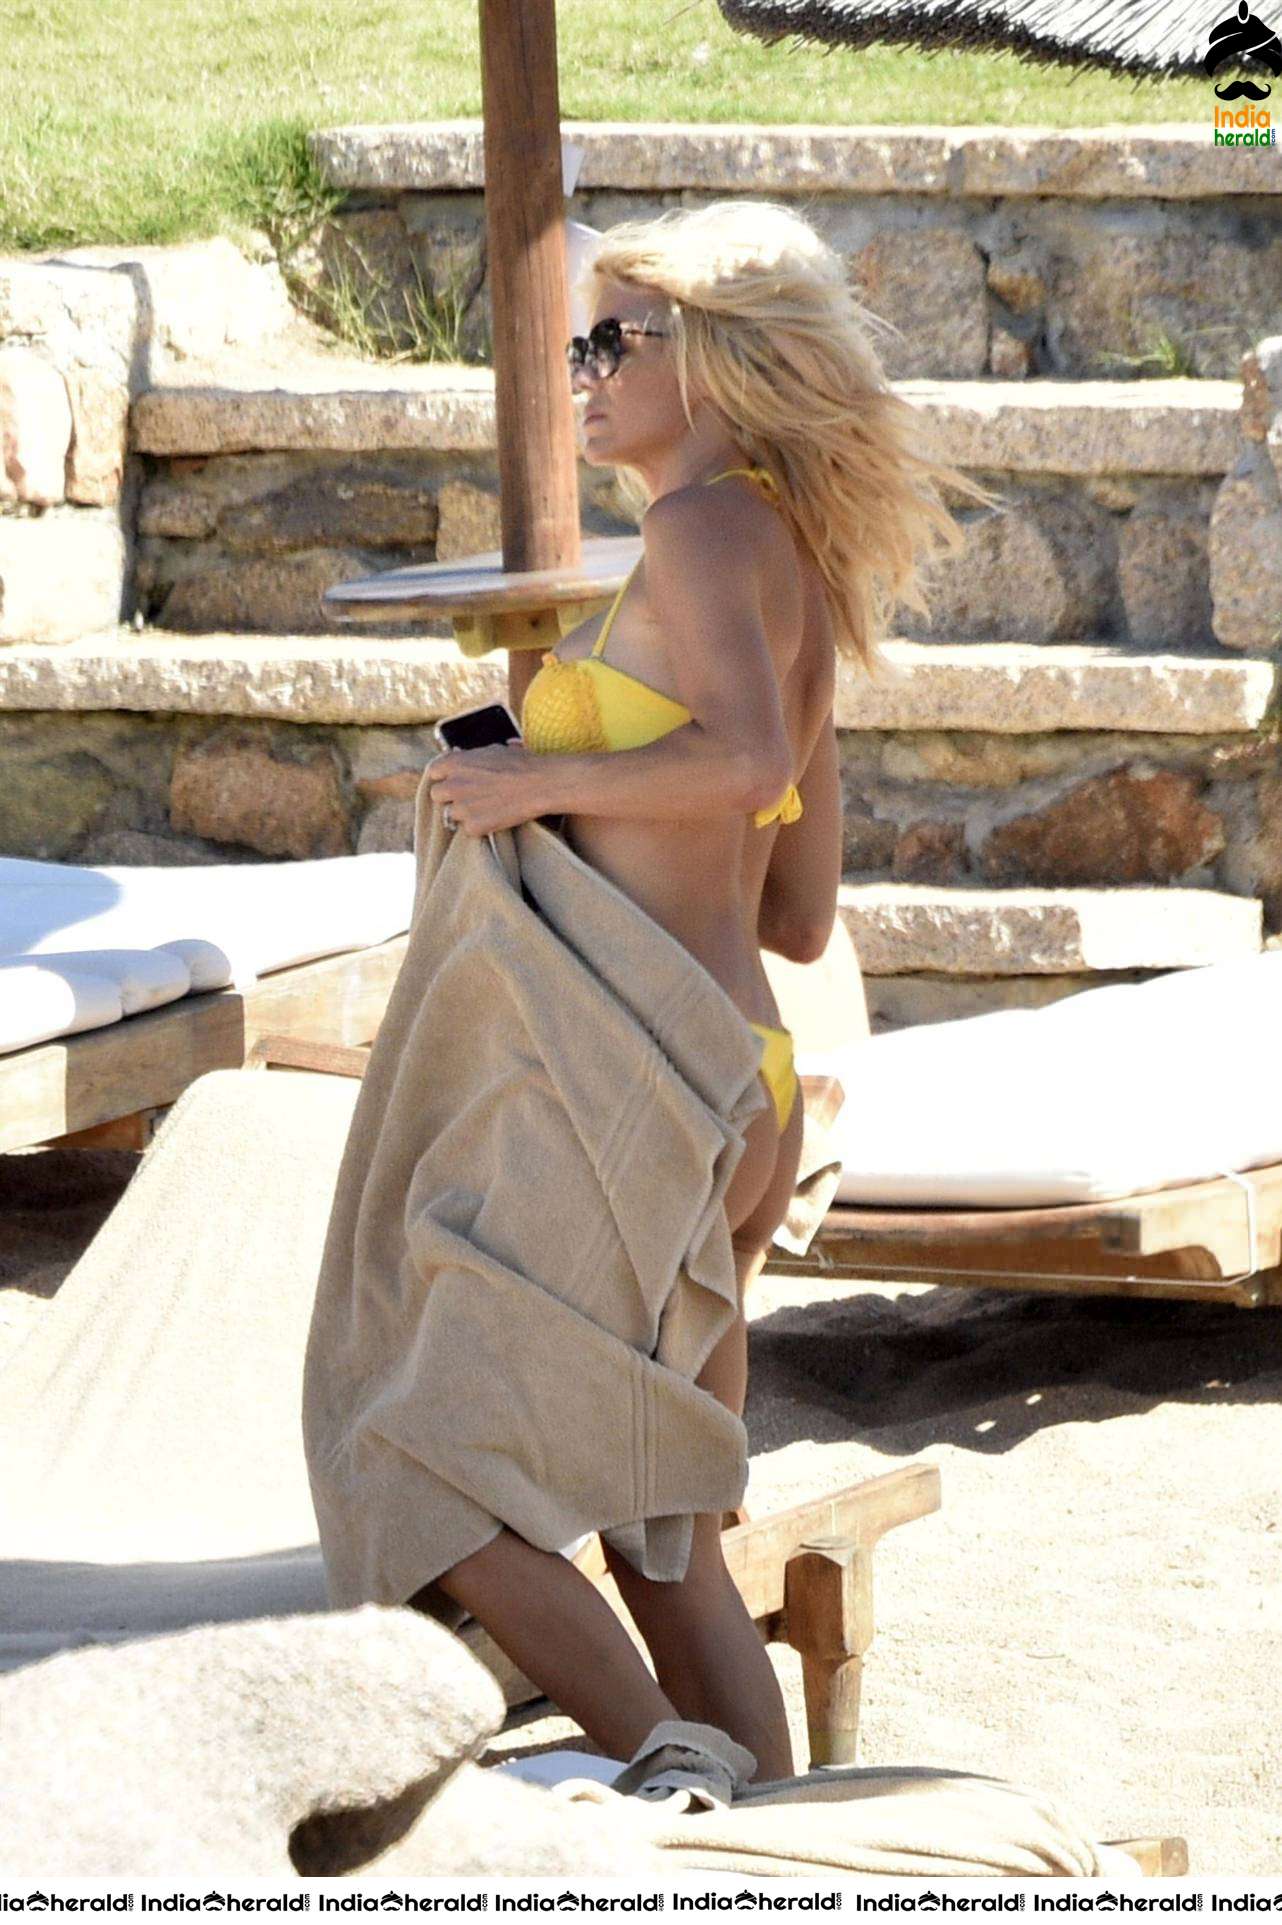 Victoria Silvstedt caught in Bikini on the beach in Porto Cervo